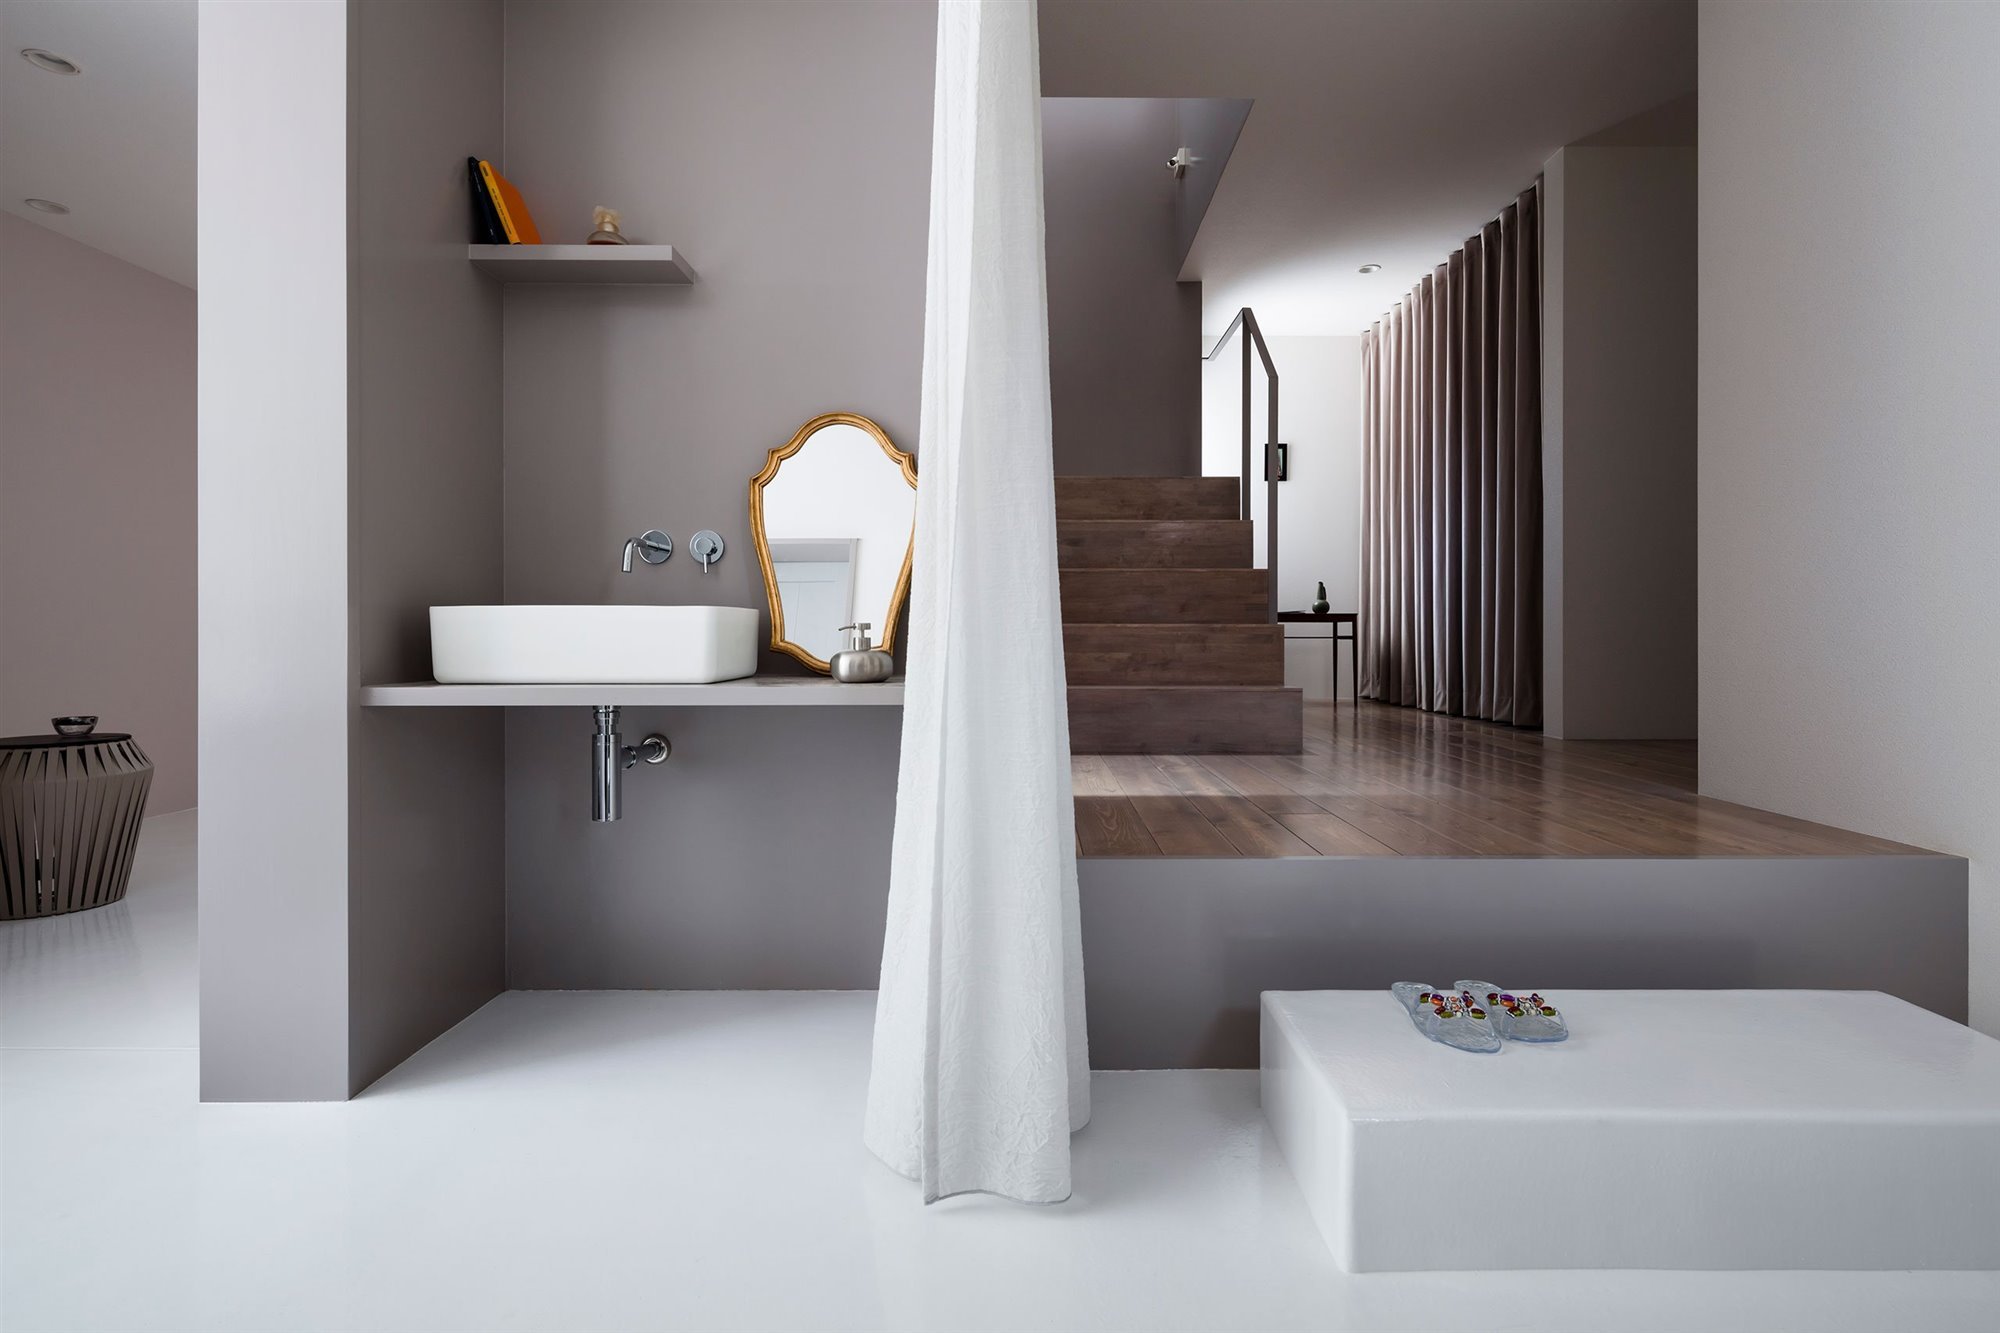 Casa moderna con decoracion de estilo minimalista en japon baño con escaleras